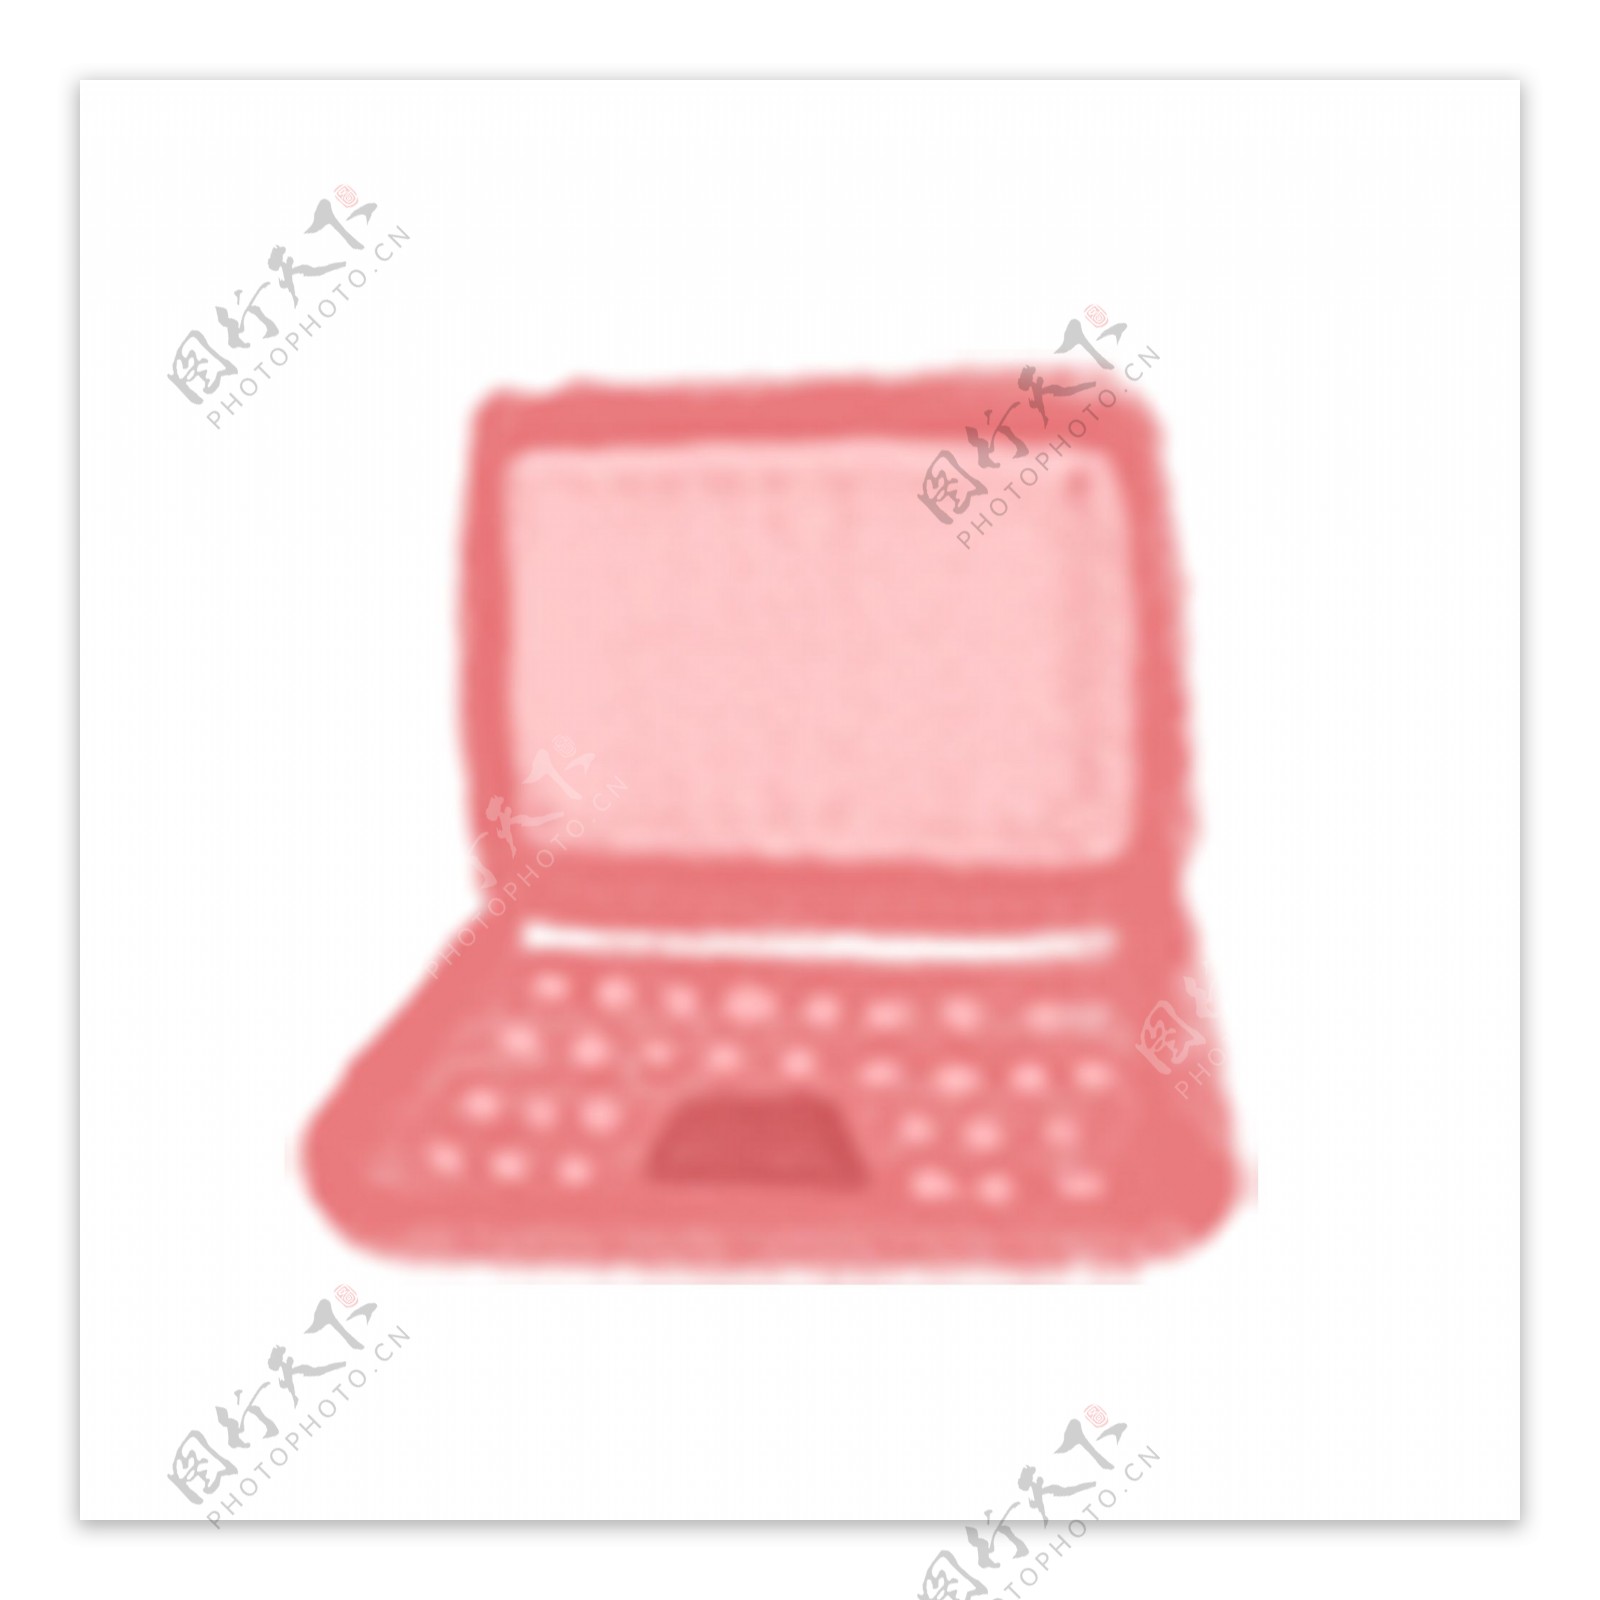 粉色笔记本电脑ui图标